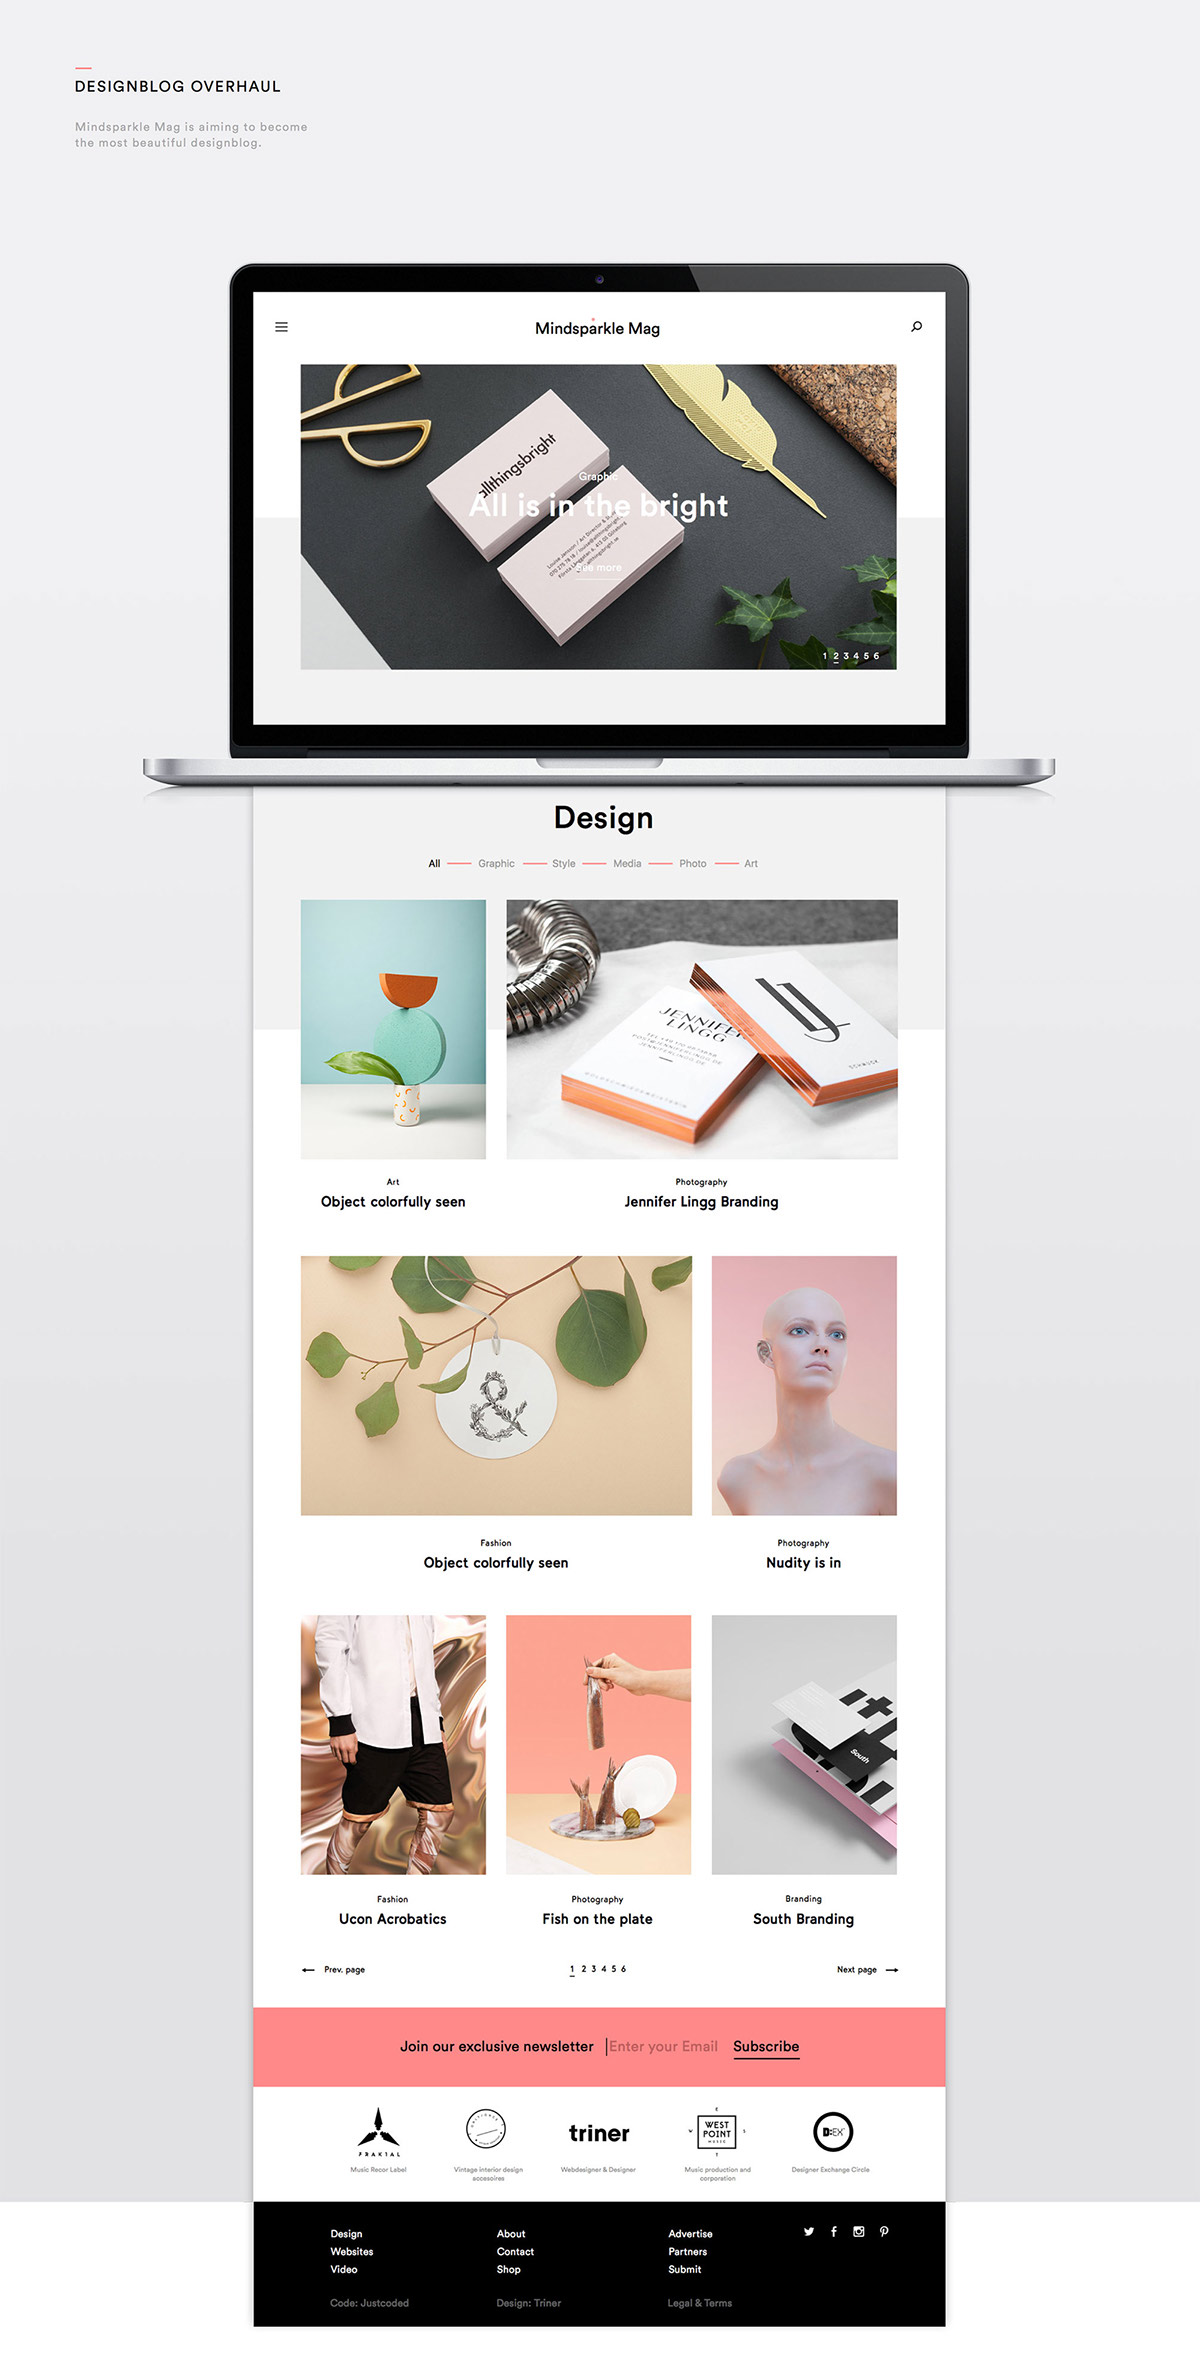 Website Webdesign minimal design designblog modern website Responsive colorful Web mobile iphone design graphic UI/UX Design